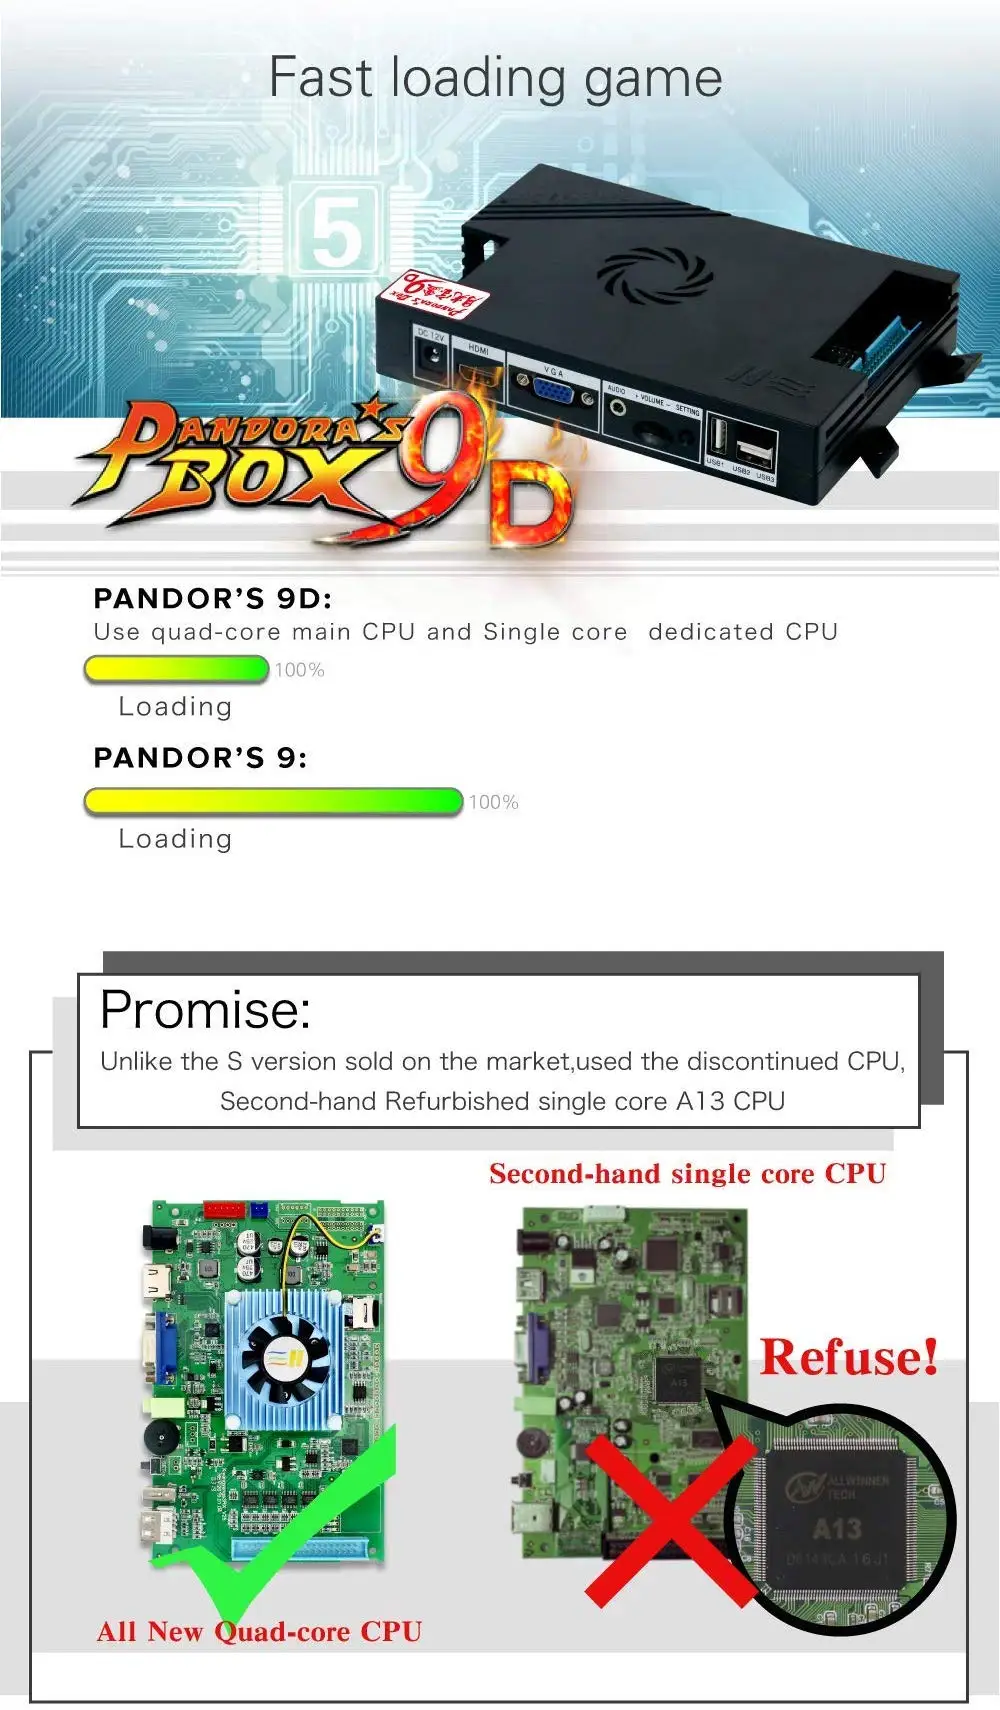 Pandora's Box 9D 2500 аркадная игровая консоль для ТВ ПК PS3 монитор Поддержка HDMI VGA USB с паузой Pandora видео аркадная машина